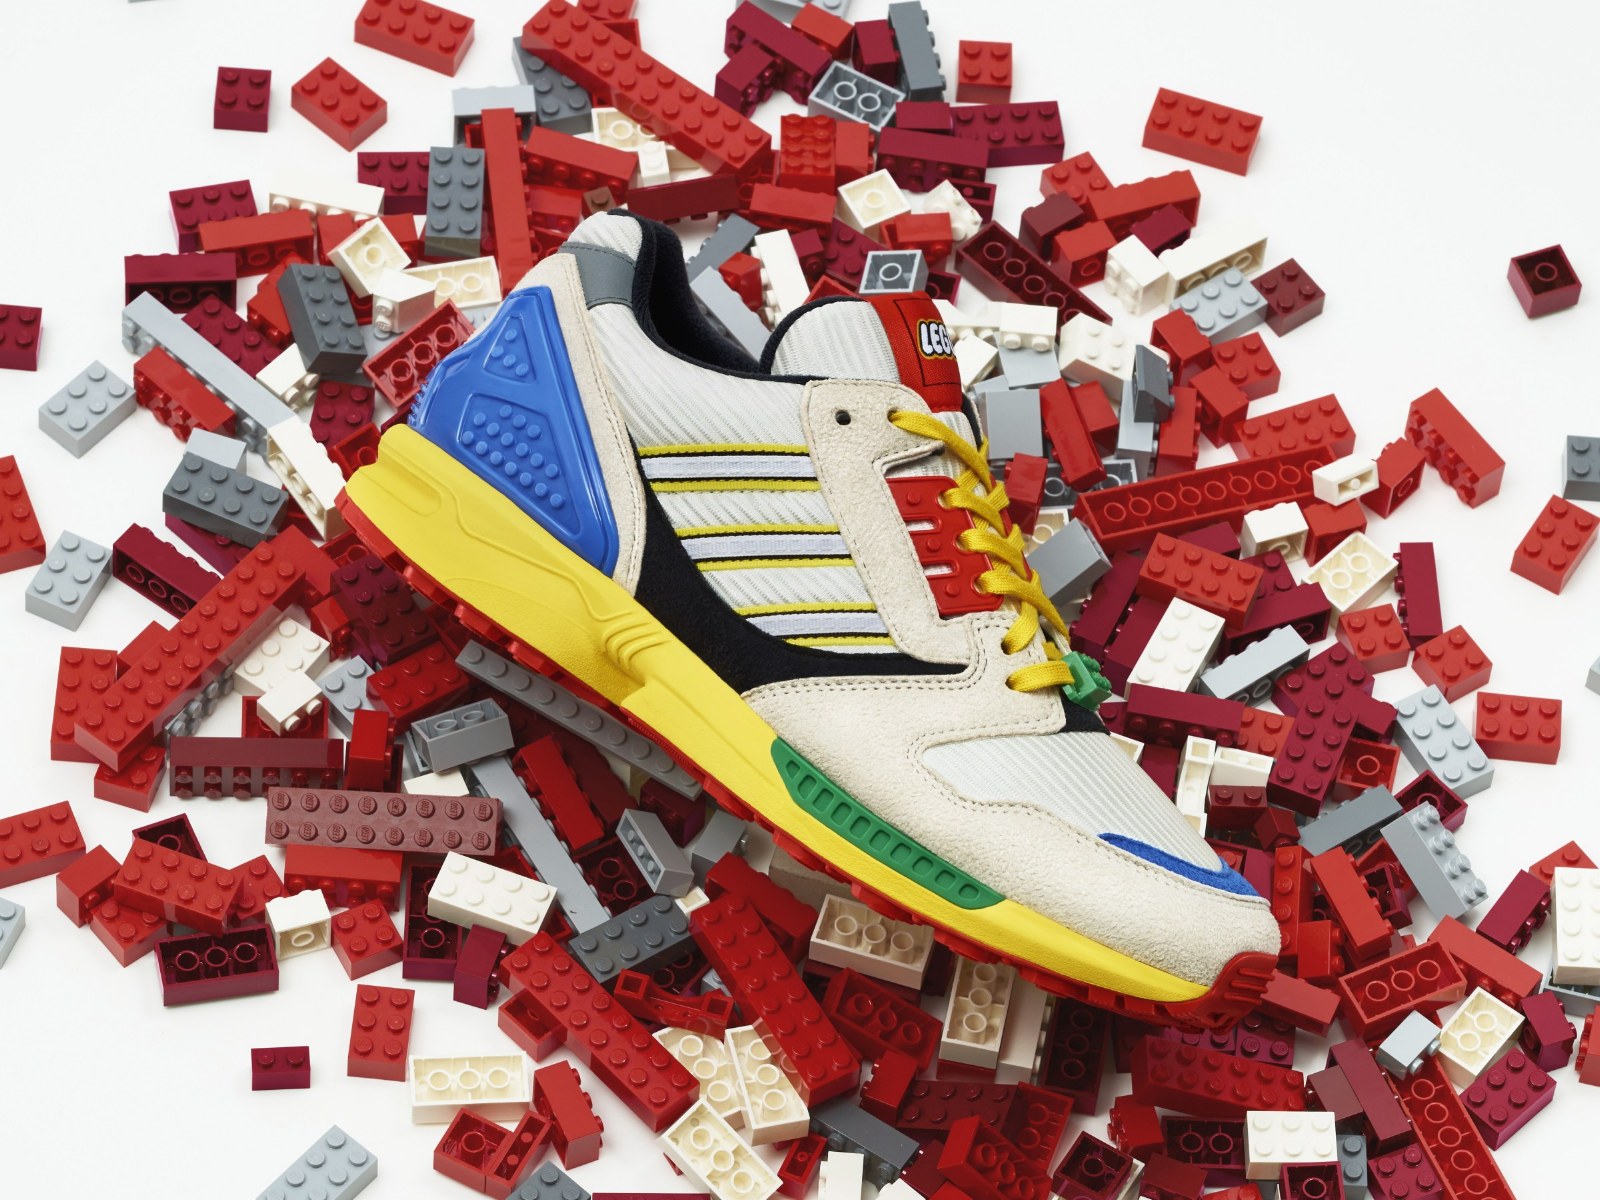 Adidas / LEGO release Brickset: LEGO set database